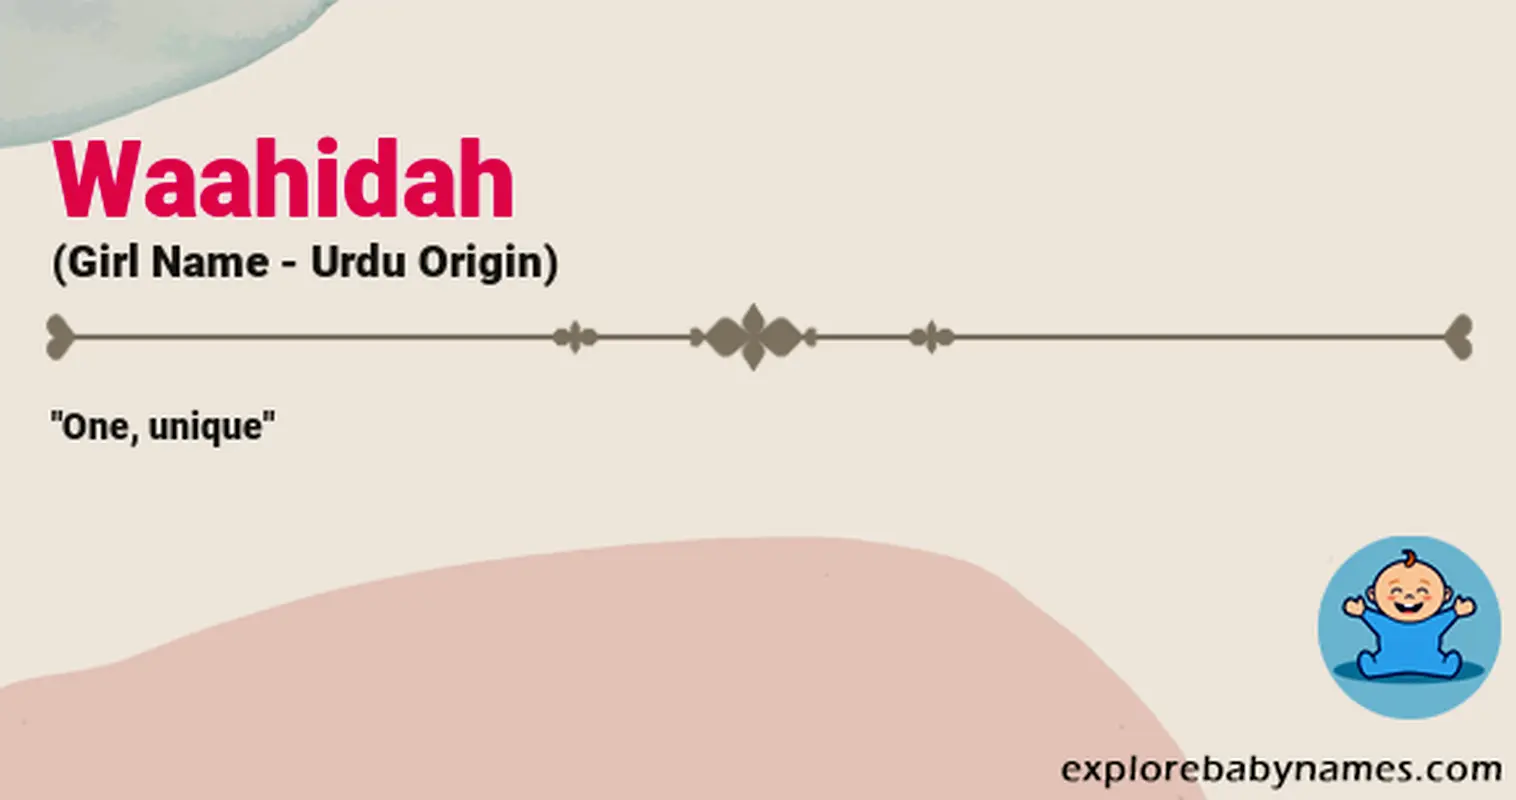 Meaning of Waahidah